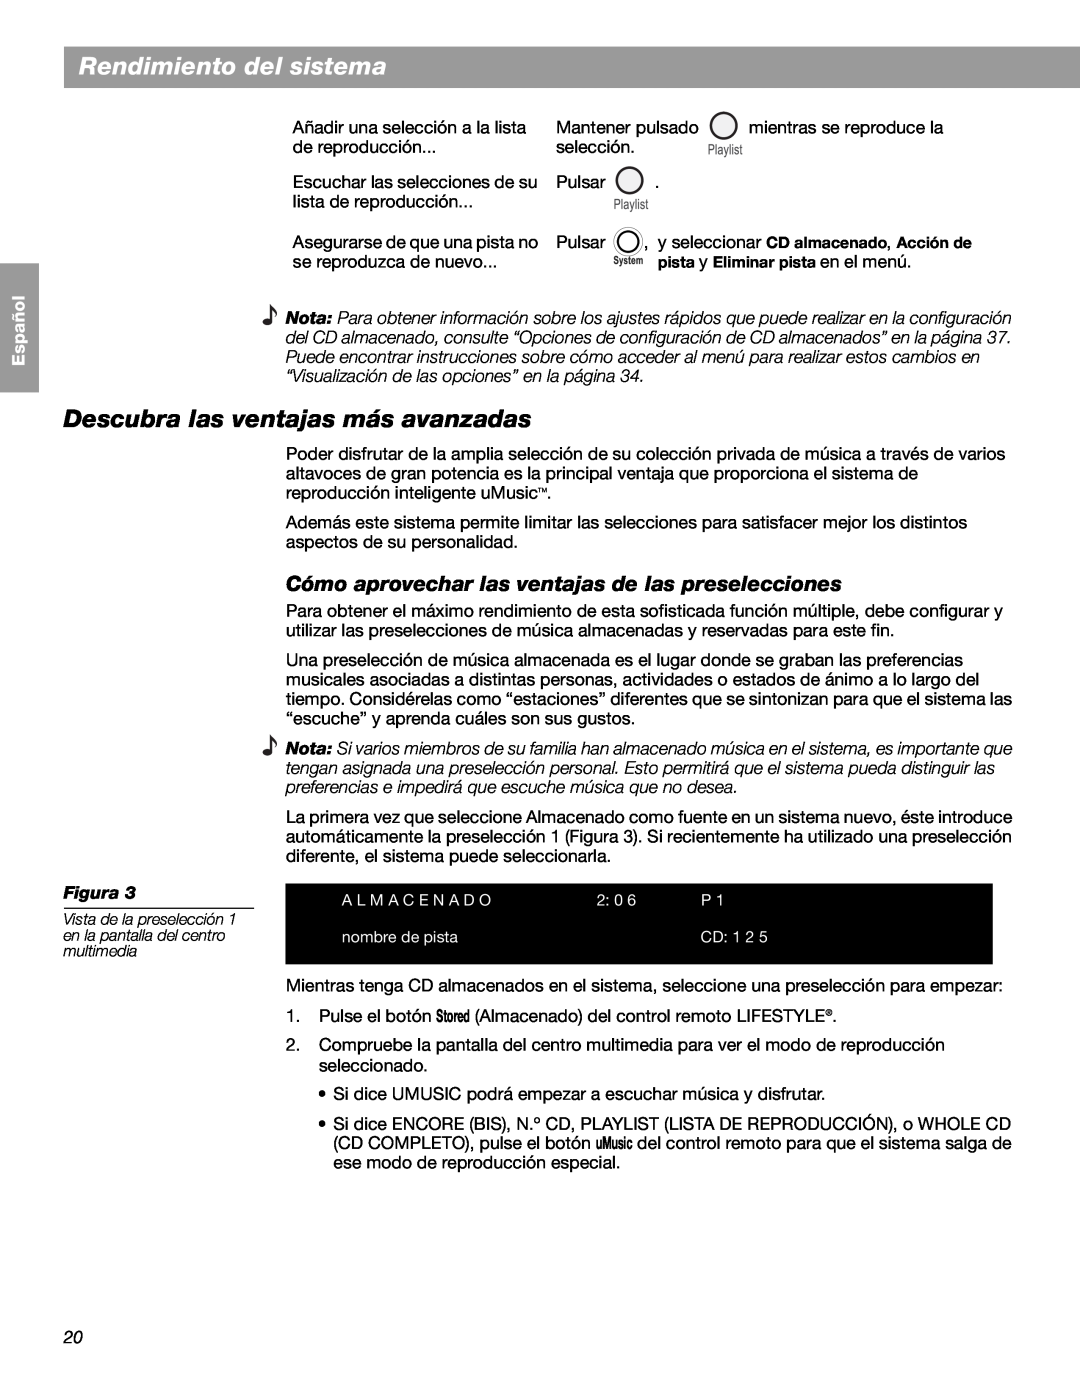 Bose LIFESTYLE 48 manual Descubra las ventajas más avanzadas, Rendimiento del sistema, English Español, Français, Figura 